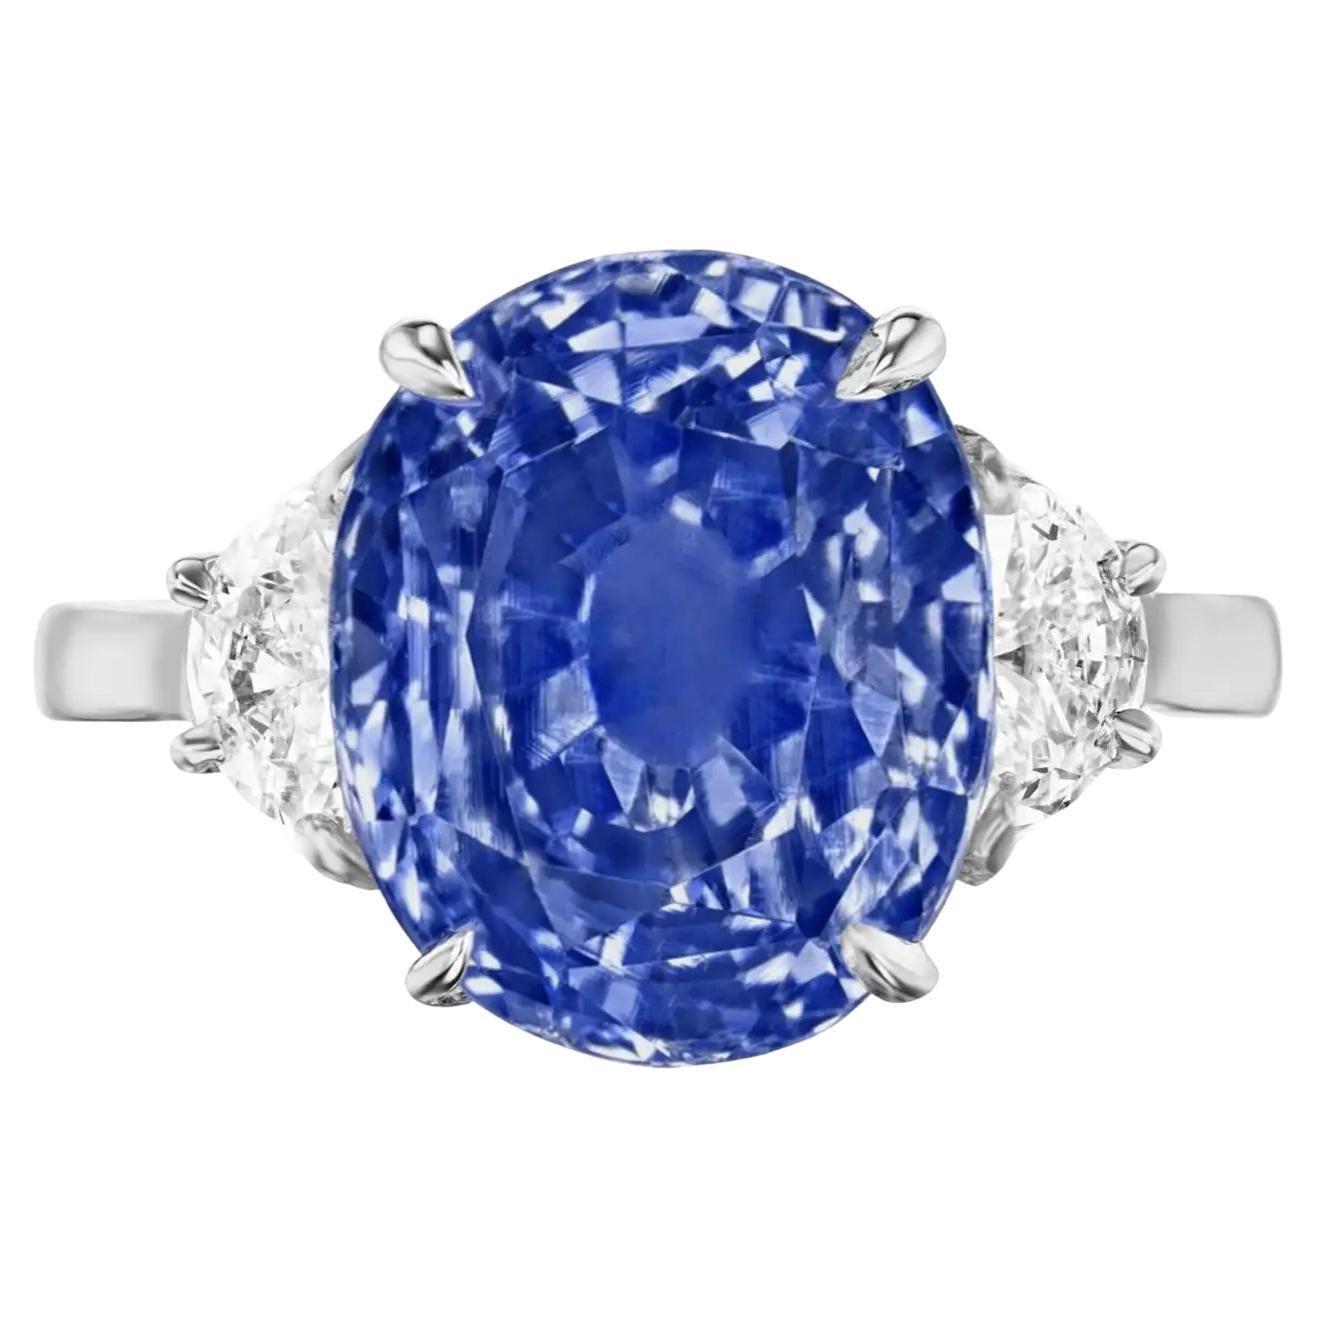 Entrez dans un monde de luxe inégalé avec notre saphir bleu exquis de 3,60 carats, une gemme rare provenant de la région très convoitée du Cachemire. Cette pierre précieuse extraordinaire est une célébration de l'art le plus raffiné de la nature,